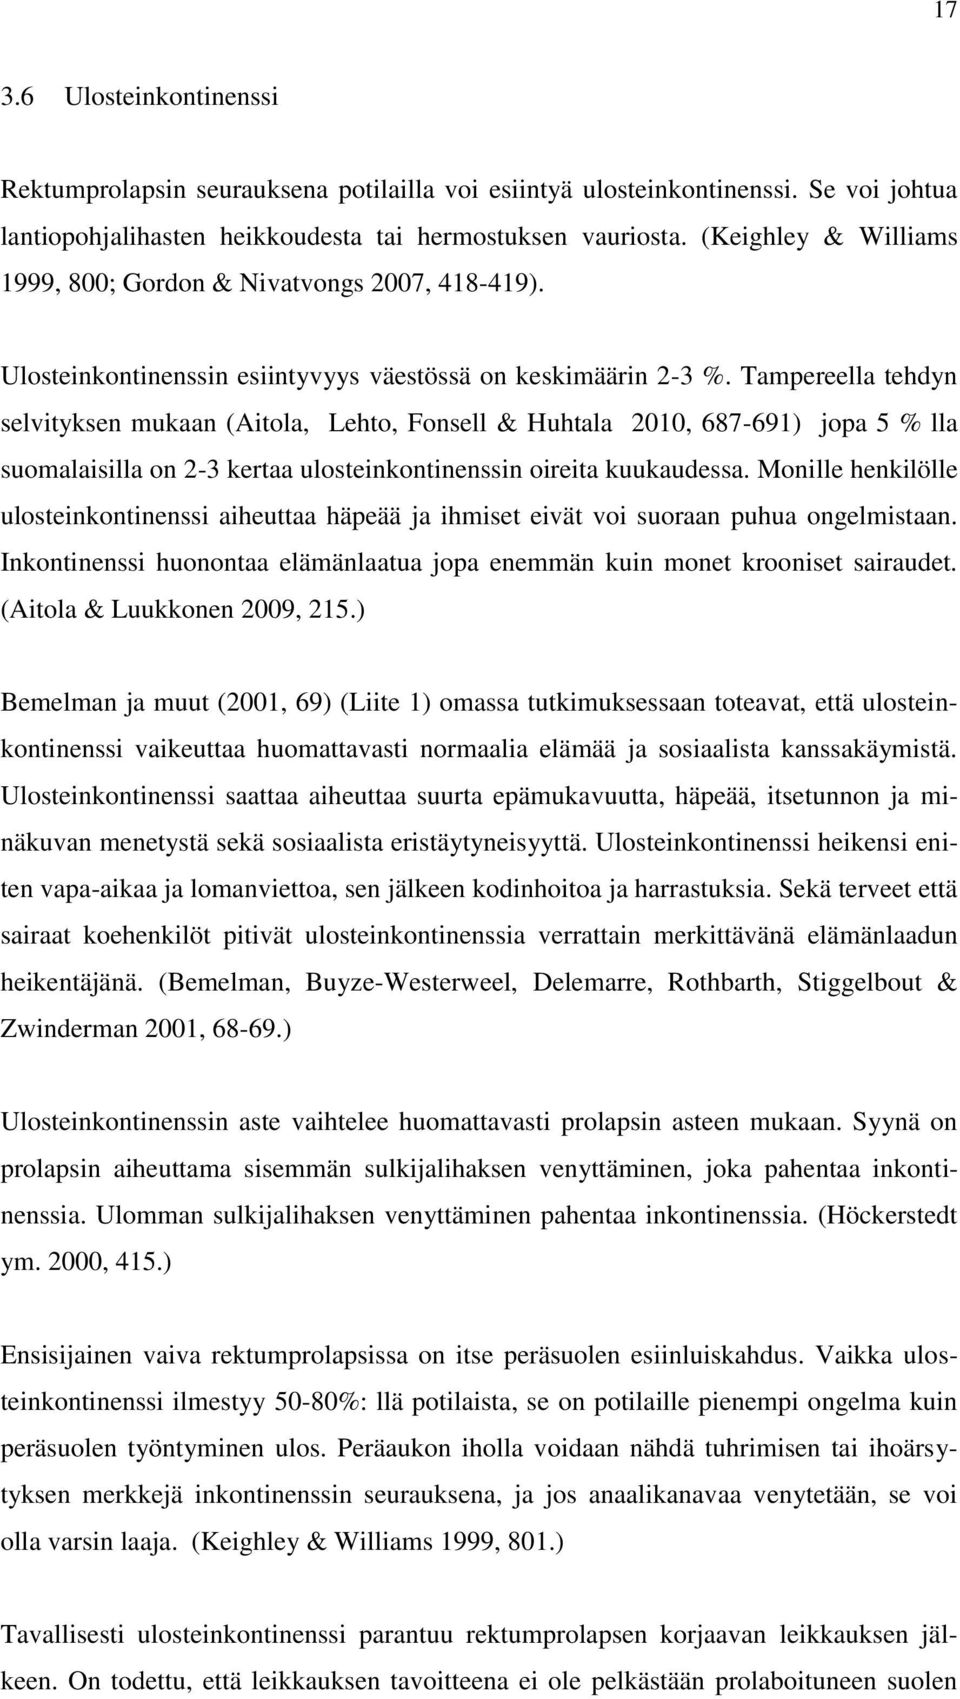 Tampereella tehdyn selvityksen mukaan (Aitola, Lehto, Fonsell & Huhtala 2010, 687-691) jopa 5 % lla suomalaisilla on 2-3 kertaa ulosteinkontinenssin oireita kuukaudessa.